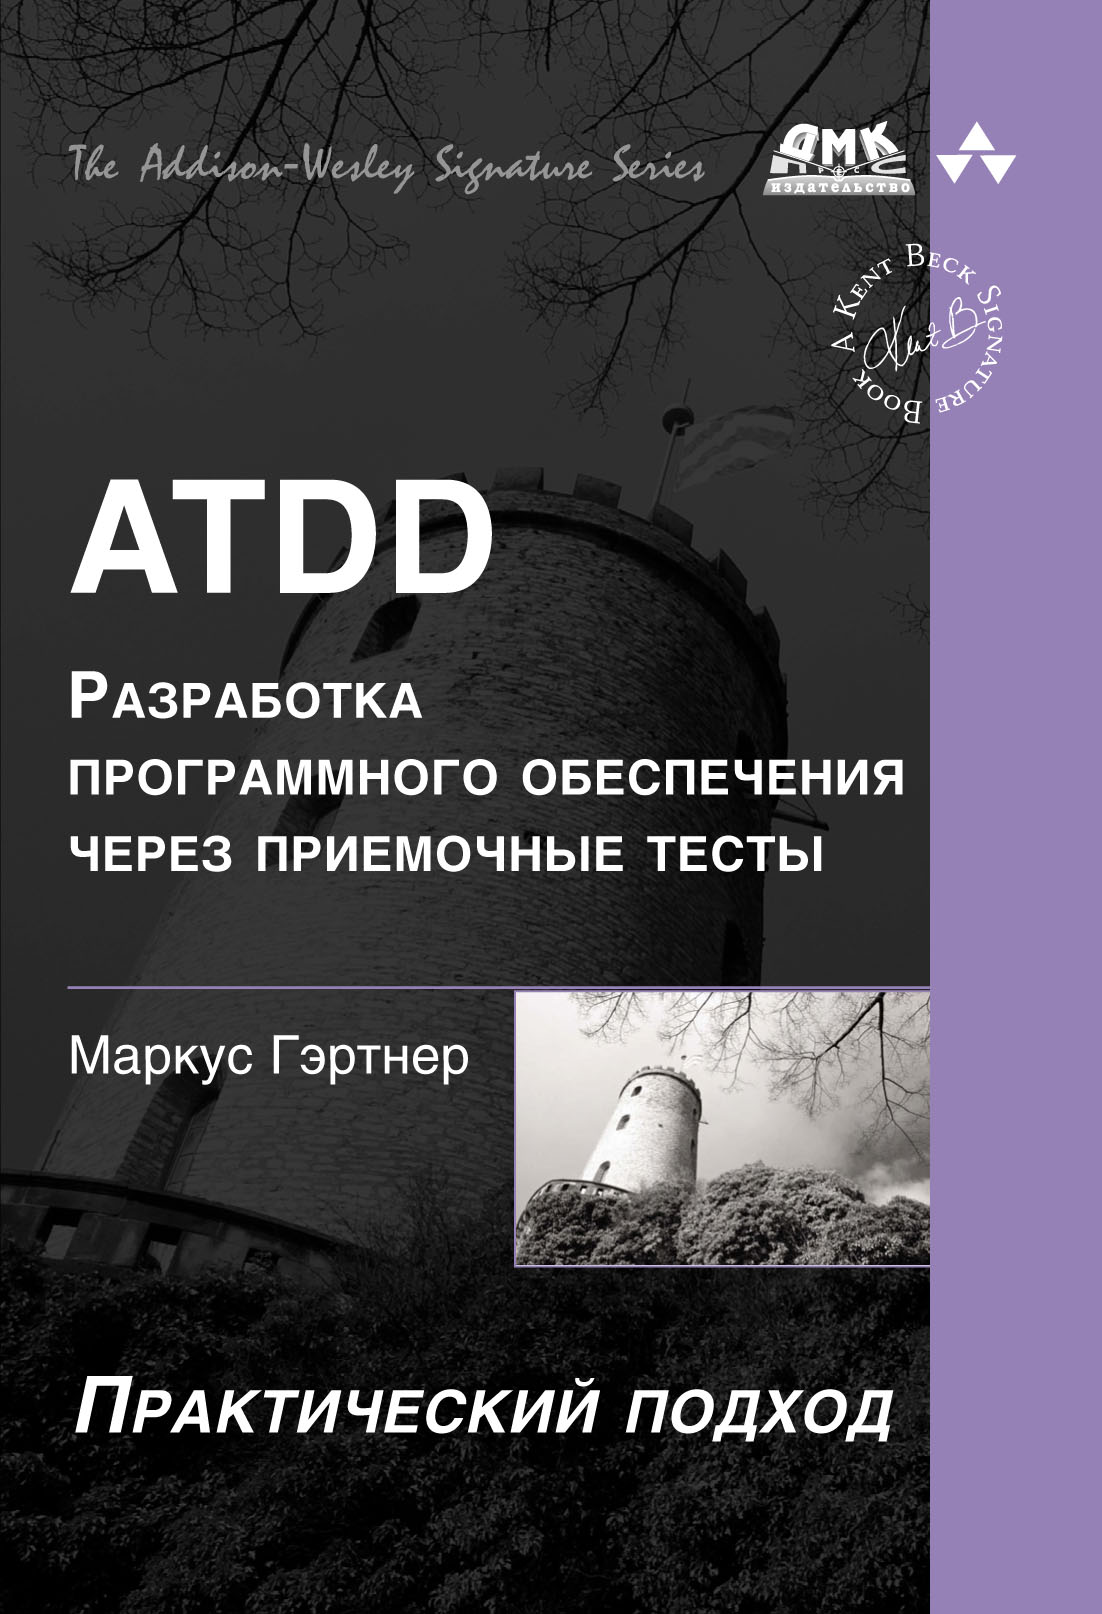 ATDD– разработка программного обеспечения через приёмочные тесты